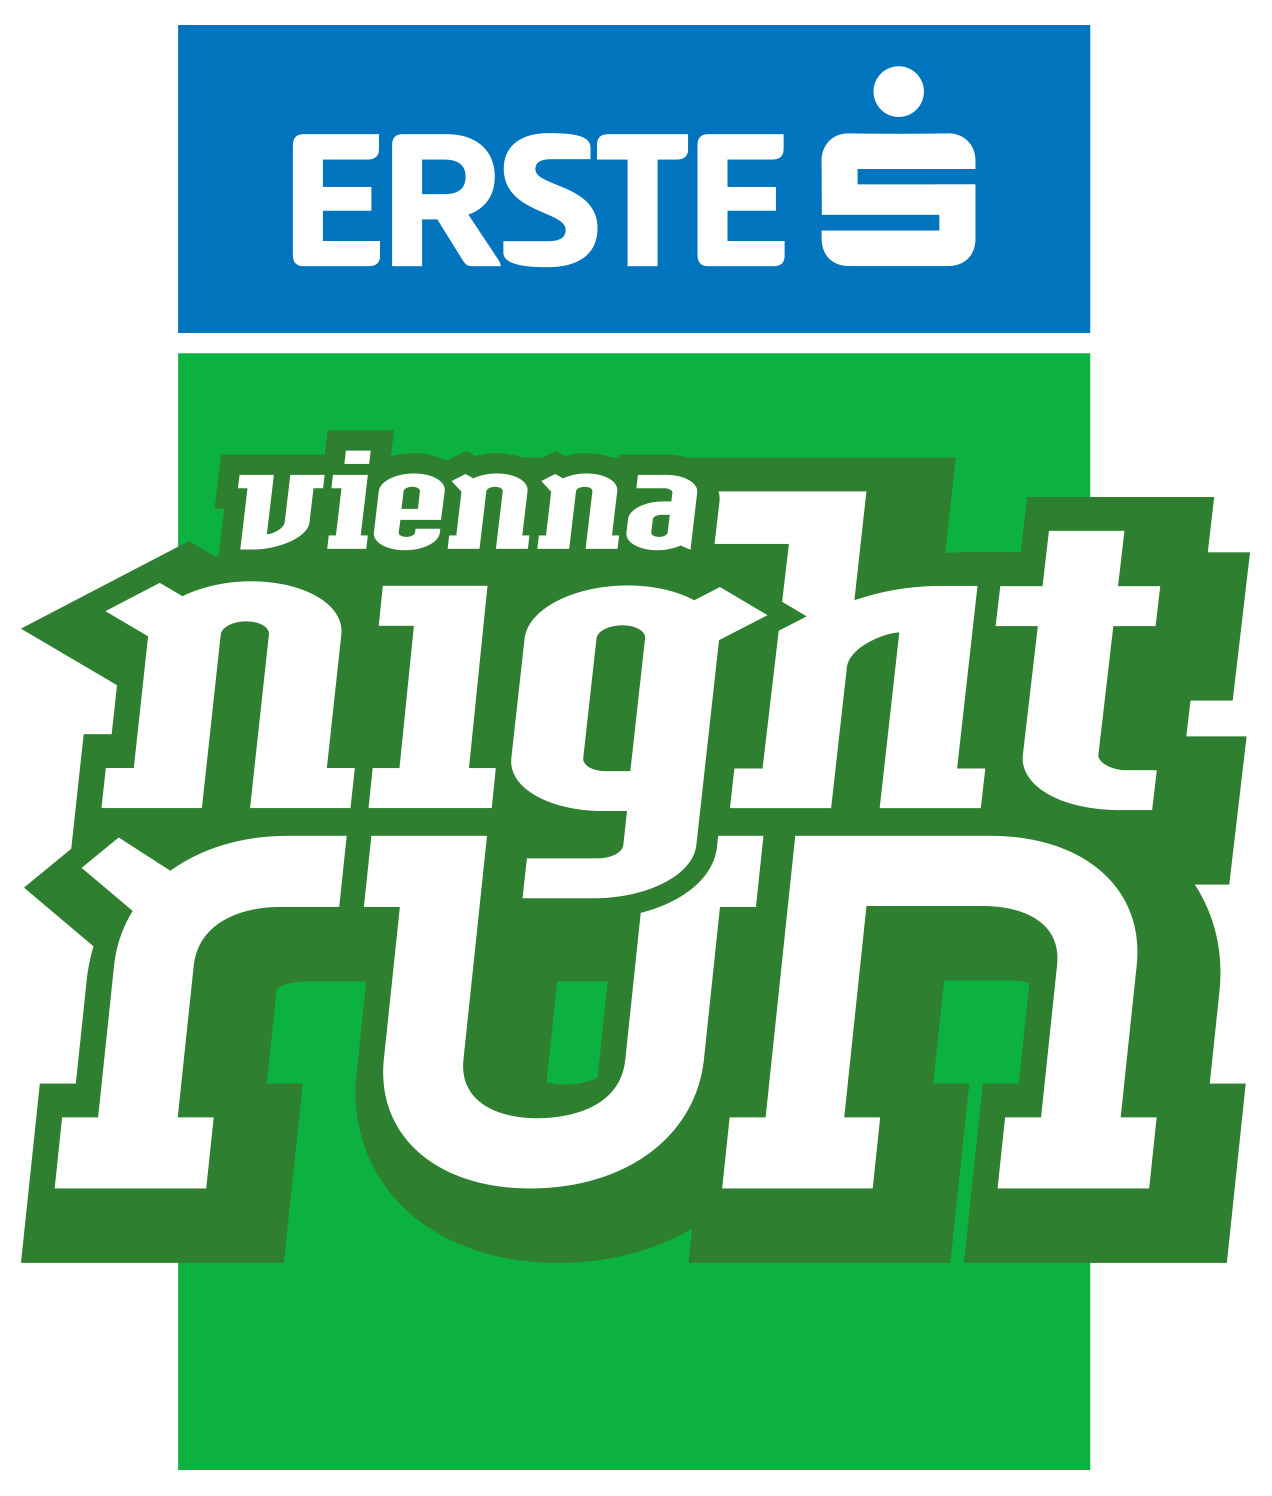 erste bank vienna night run